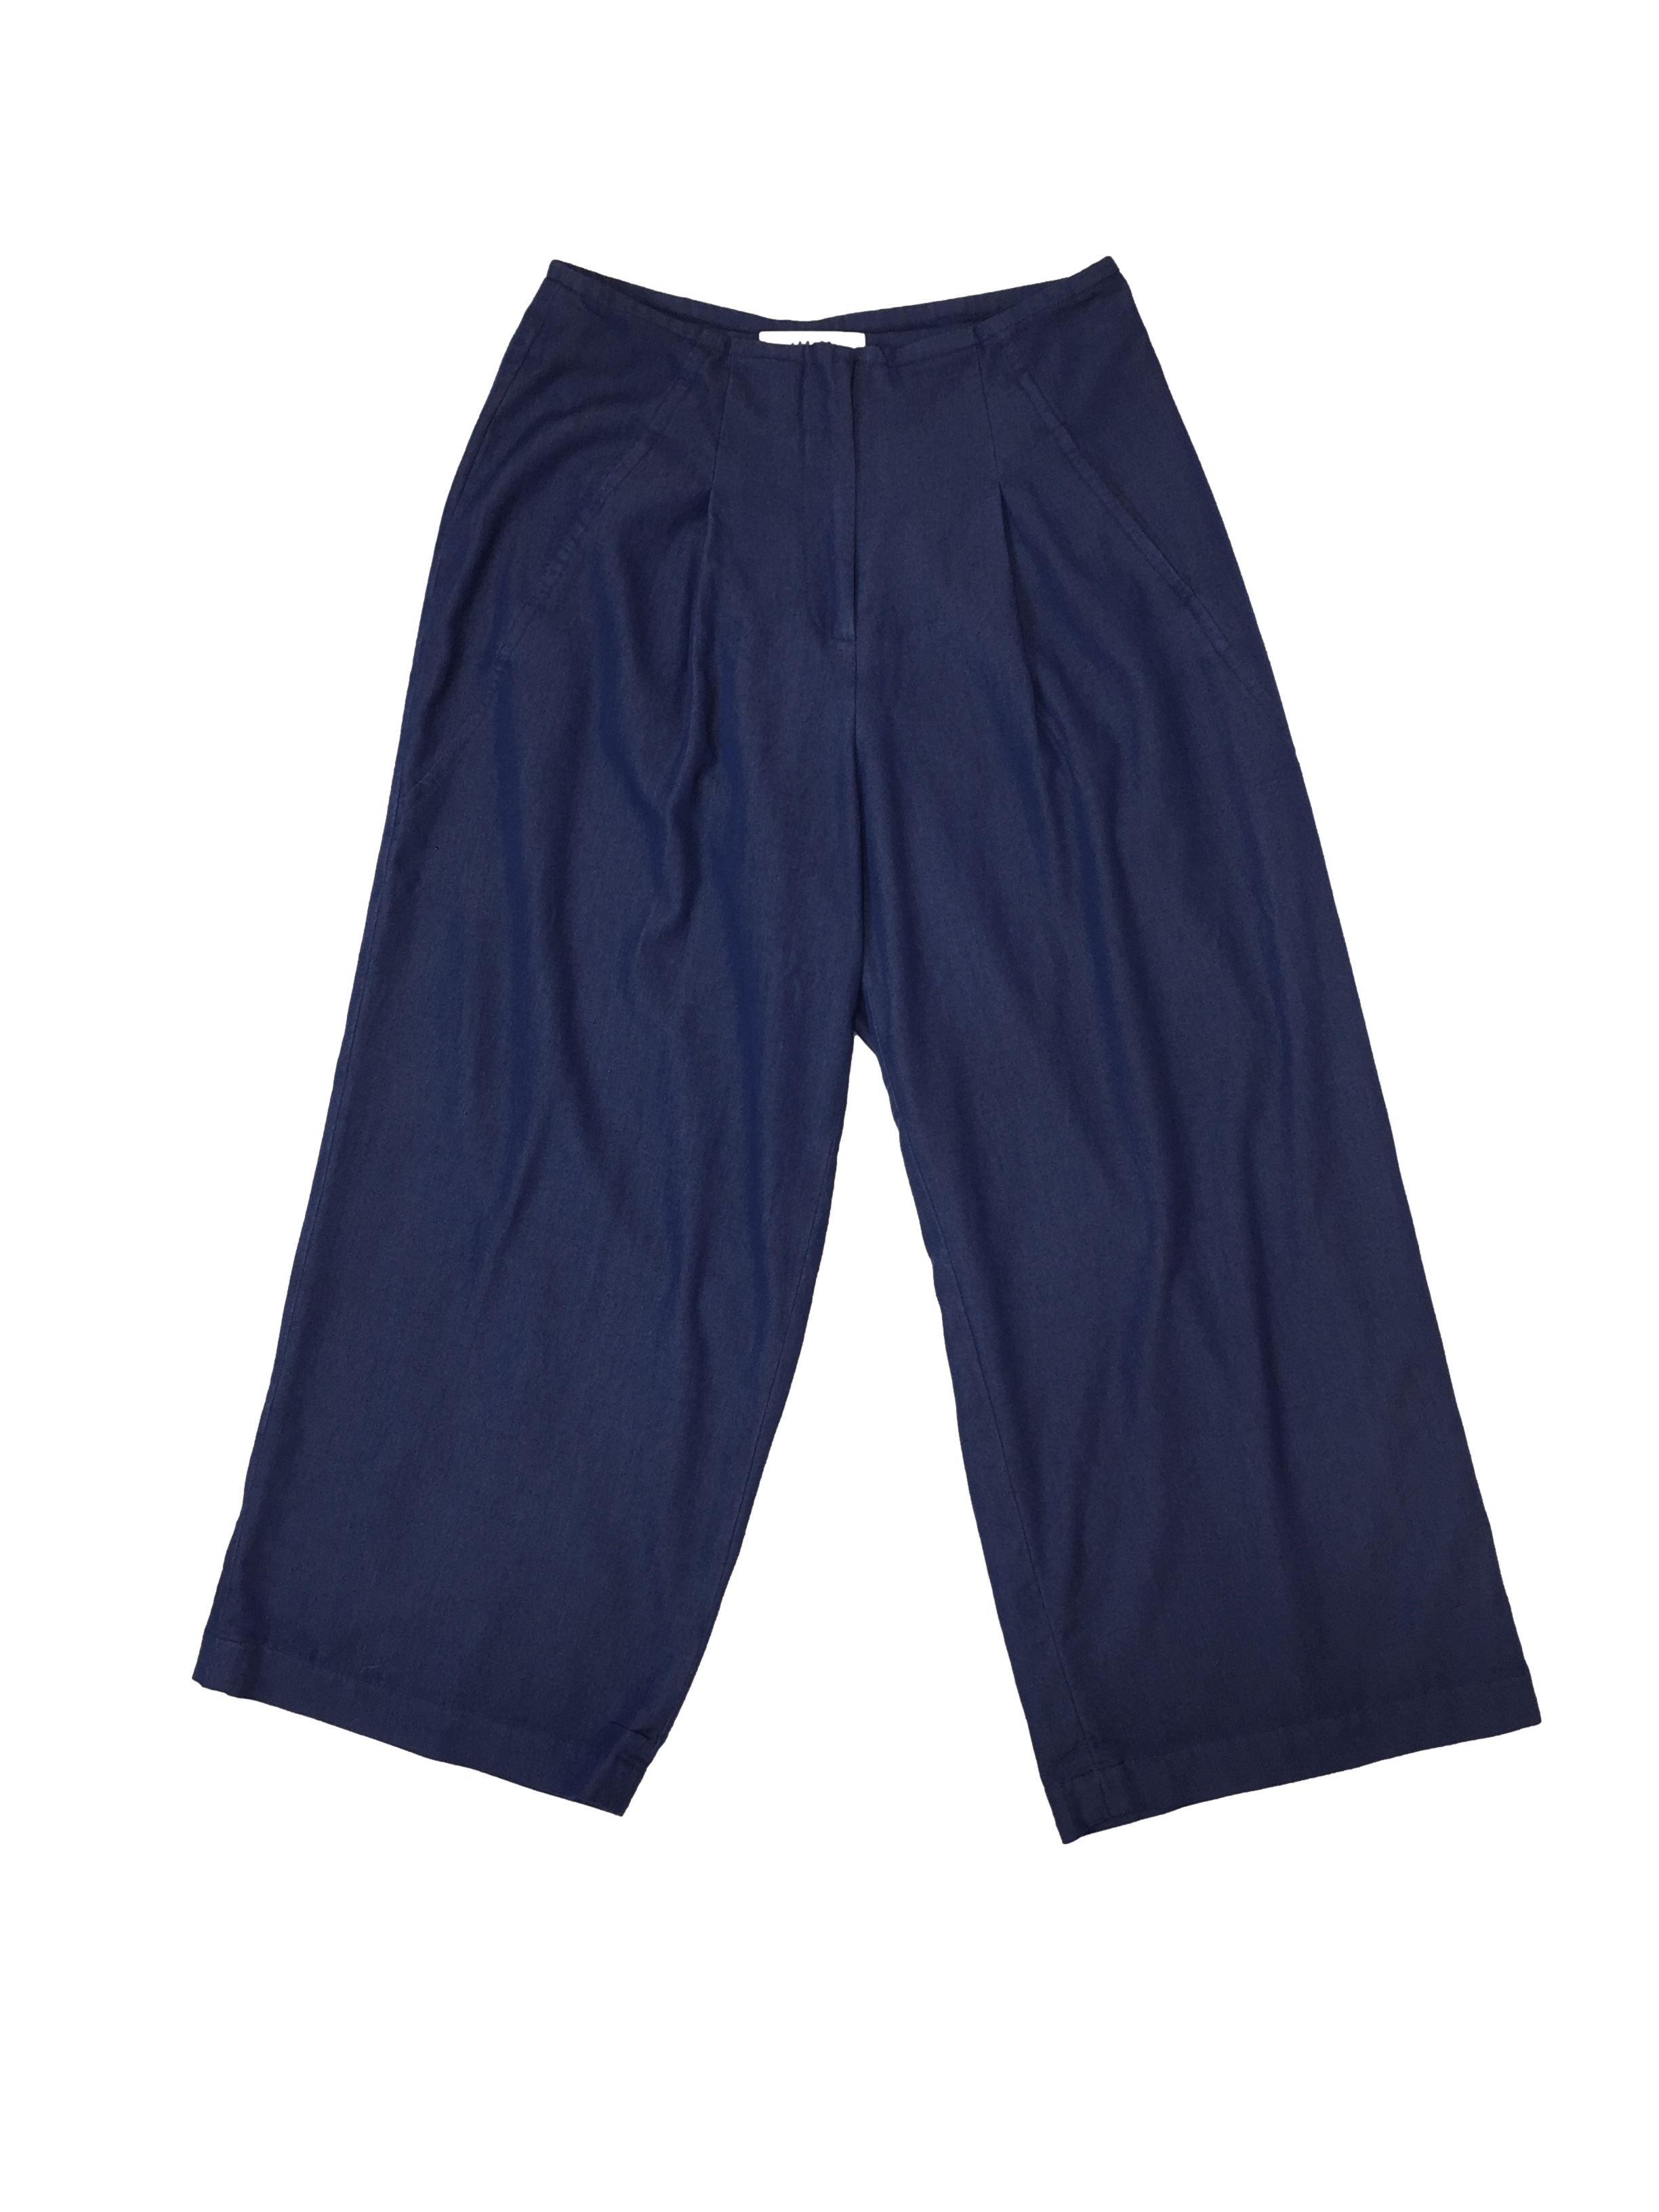 Pantalón culotte Veplen azul de chambray , con pinzas delanteras y bolsillos, cintura 70cm, tiro 52cm.largo 83cm.